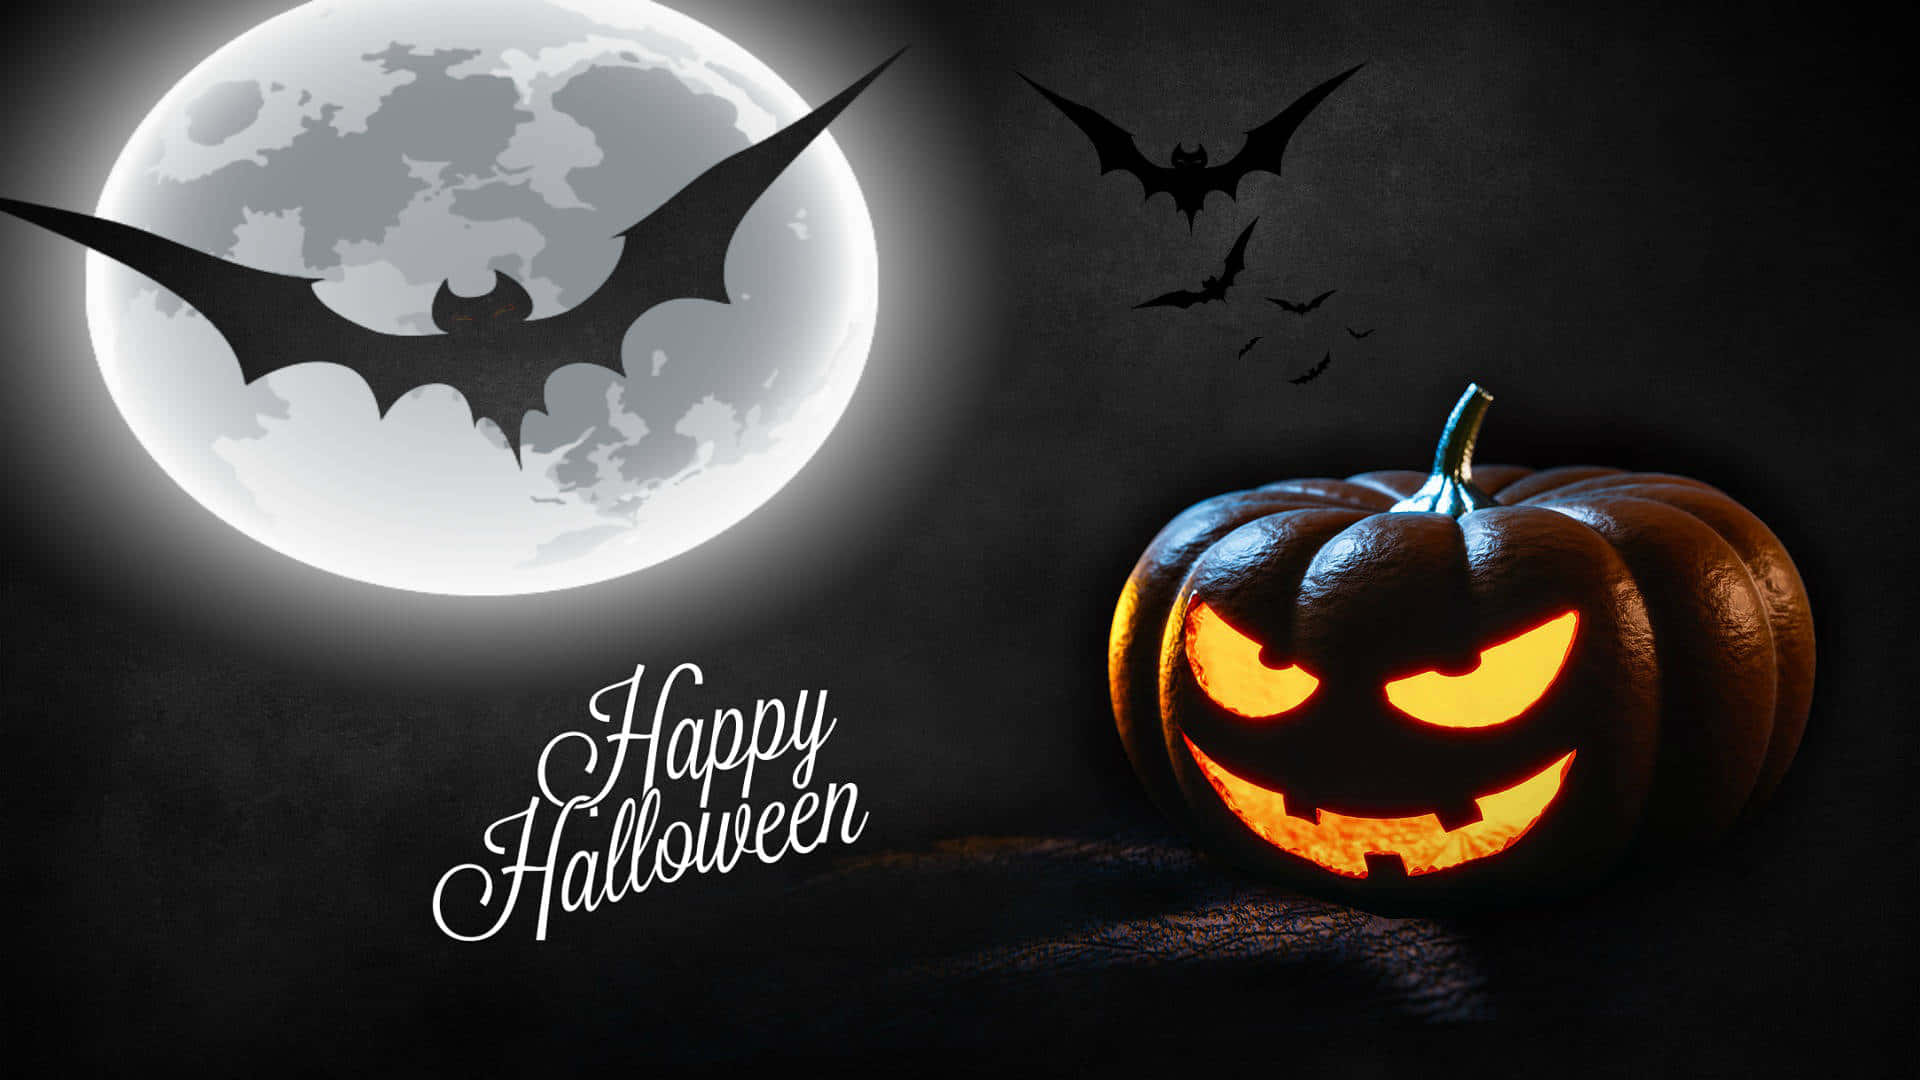 Free Spooky Halloween Wallpaper Downloads, [100+] Spooky Halloween  Wallpapers for FREE 